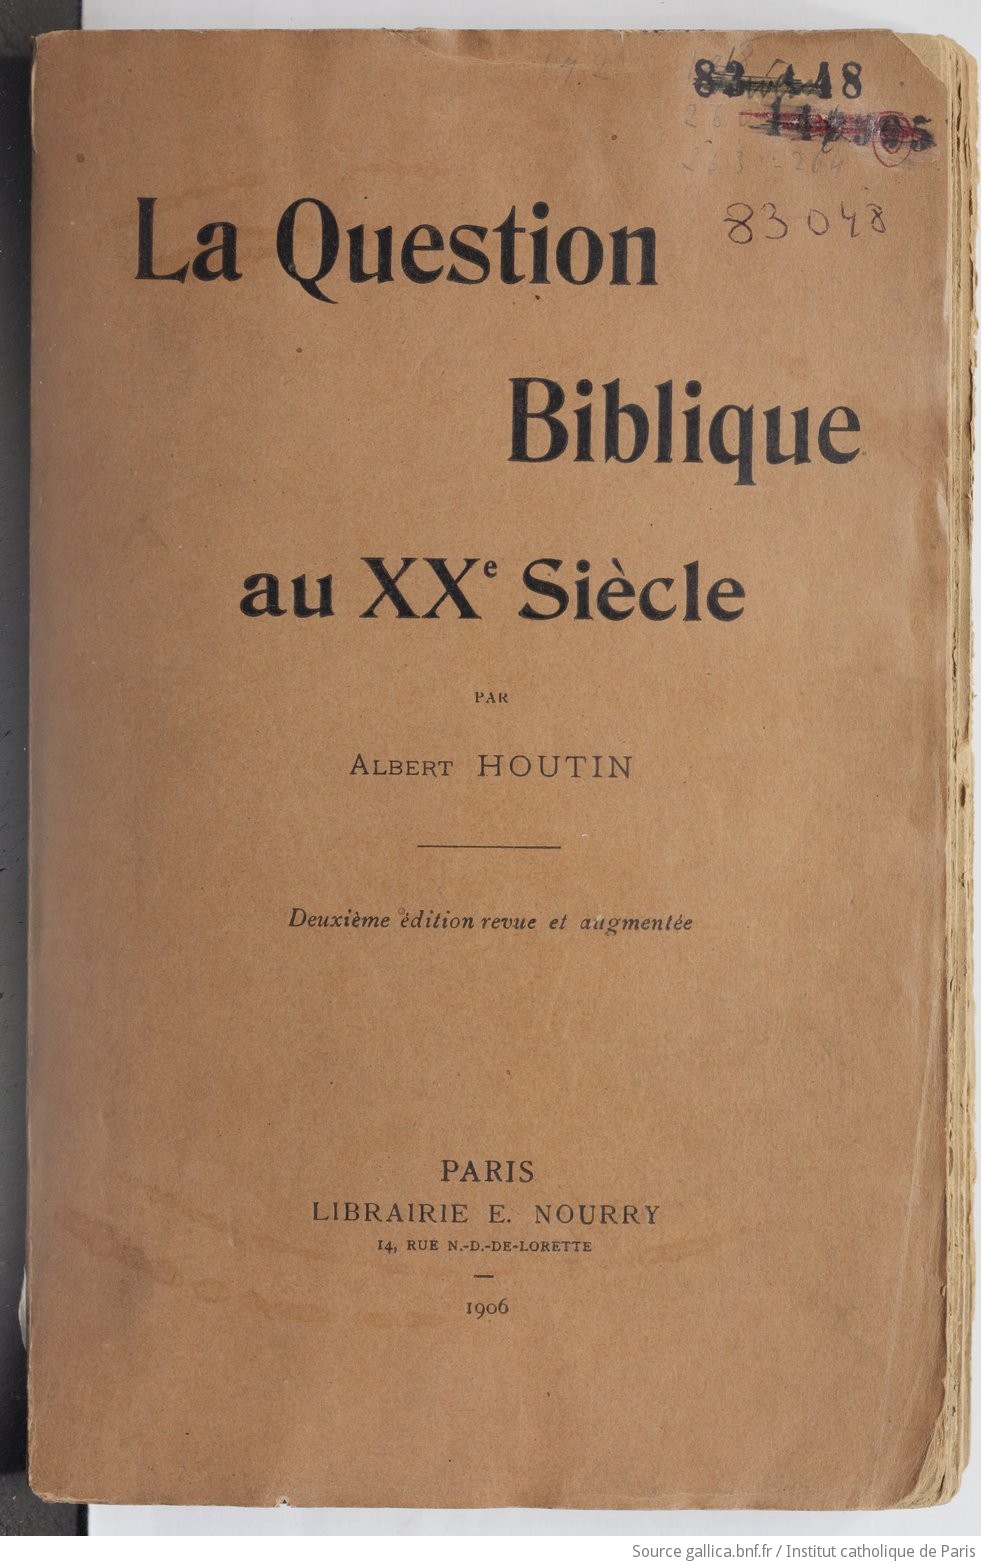 La Question biblique au XXe siècle, par Albert Houtin